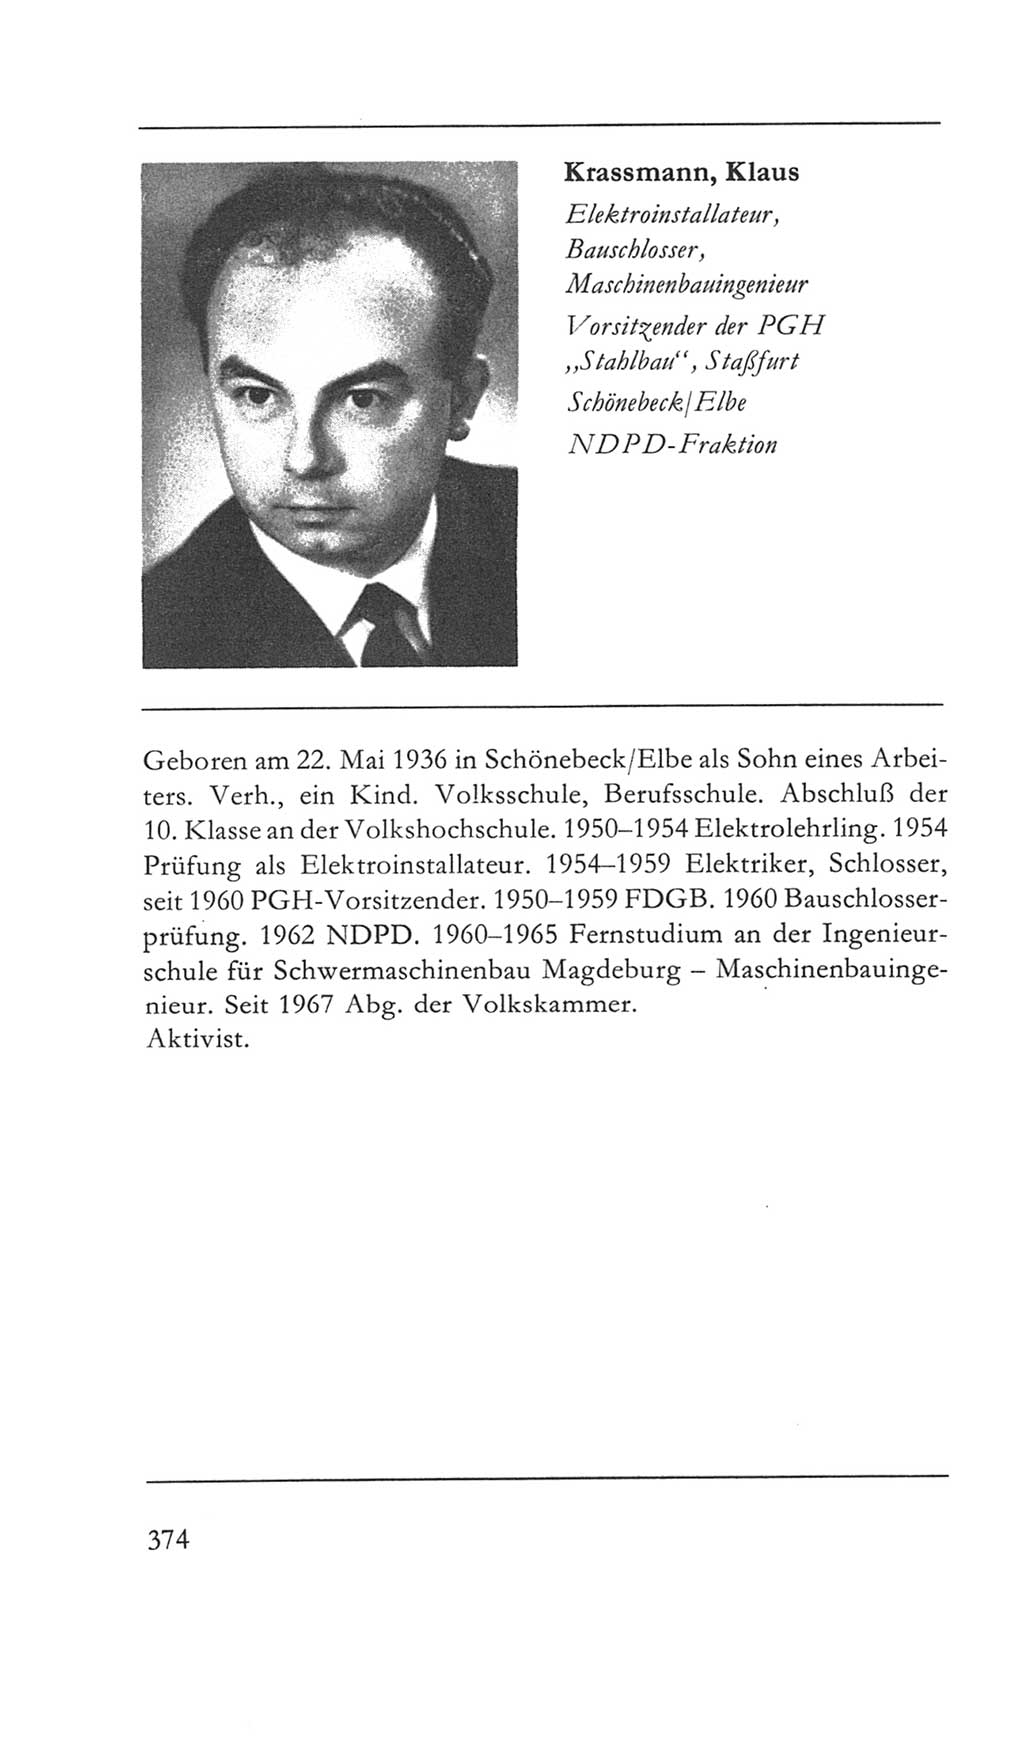 Volkskammer (VK) der Deutschen Demokratischen Republik (DDR) 5. Wahlperiode 1967-1971, Seite 374 (VK. DDR 5. WP. 1967-1971, S. 374)